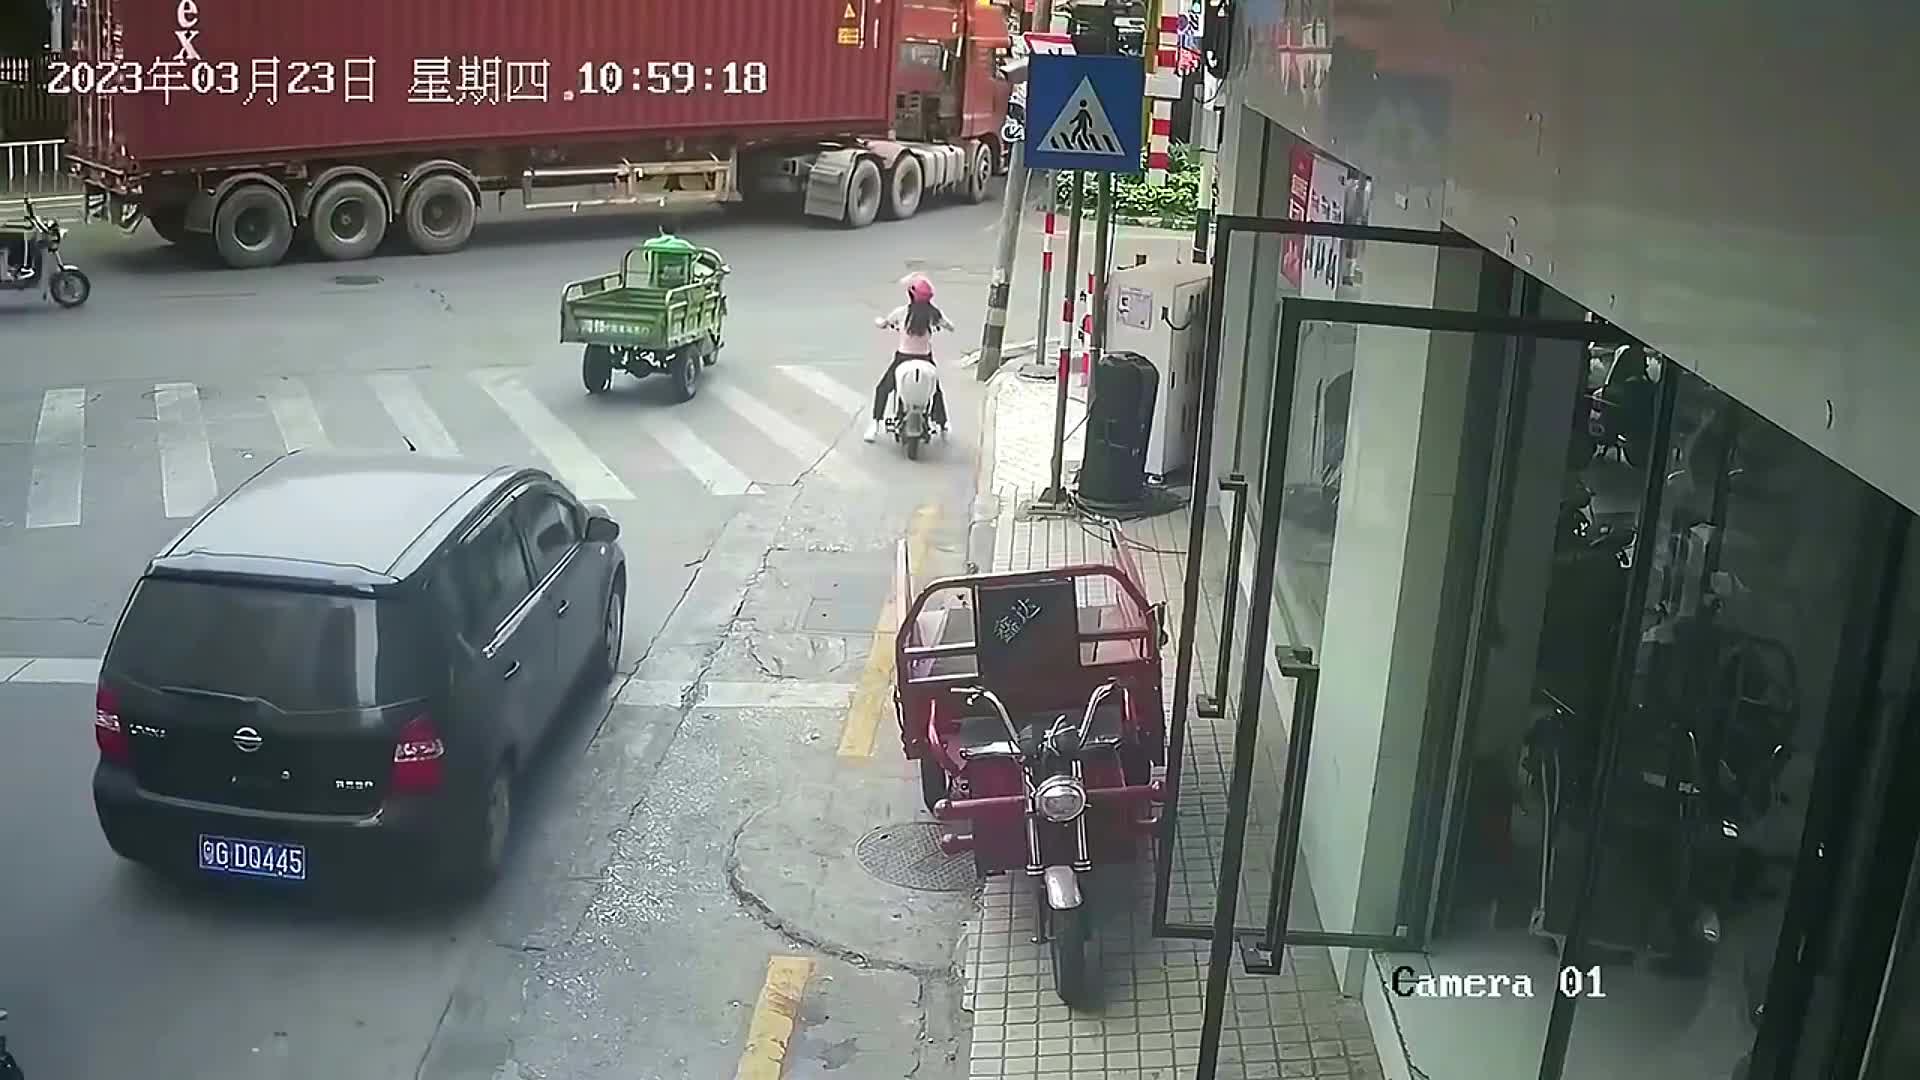 Video - Clip: Thùng xe container rơi xuống đường, suýt đè trúng người đàn ông